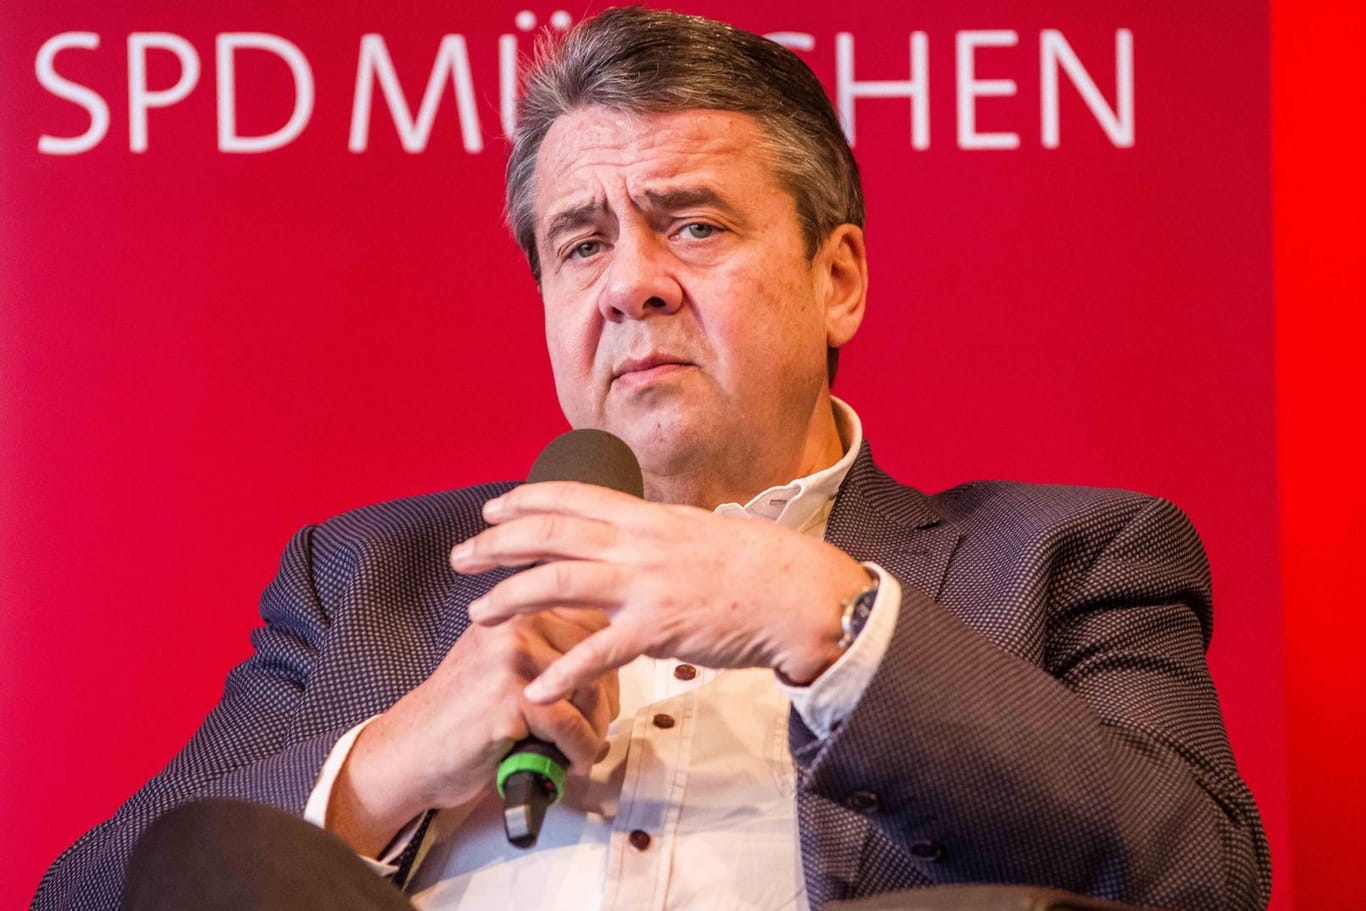 Sigmar Gabriel: Der frühere SPD-Chef hat seine Nachfolgerin Andrea Nahles indirekt kritisiert.